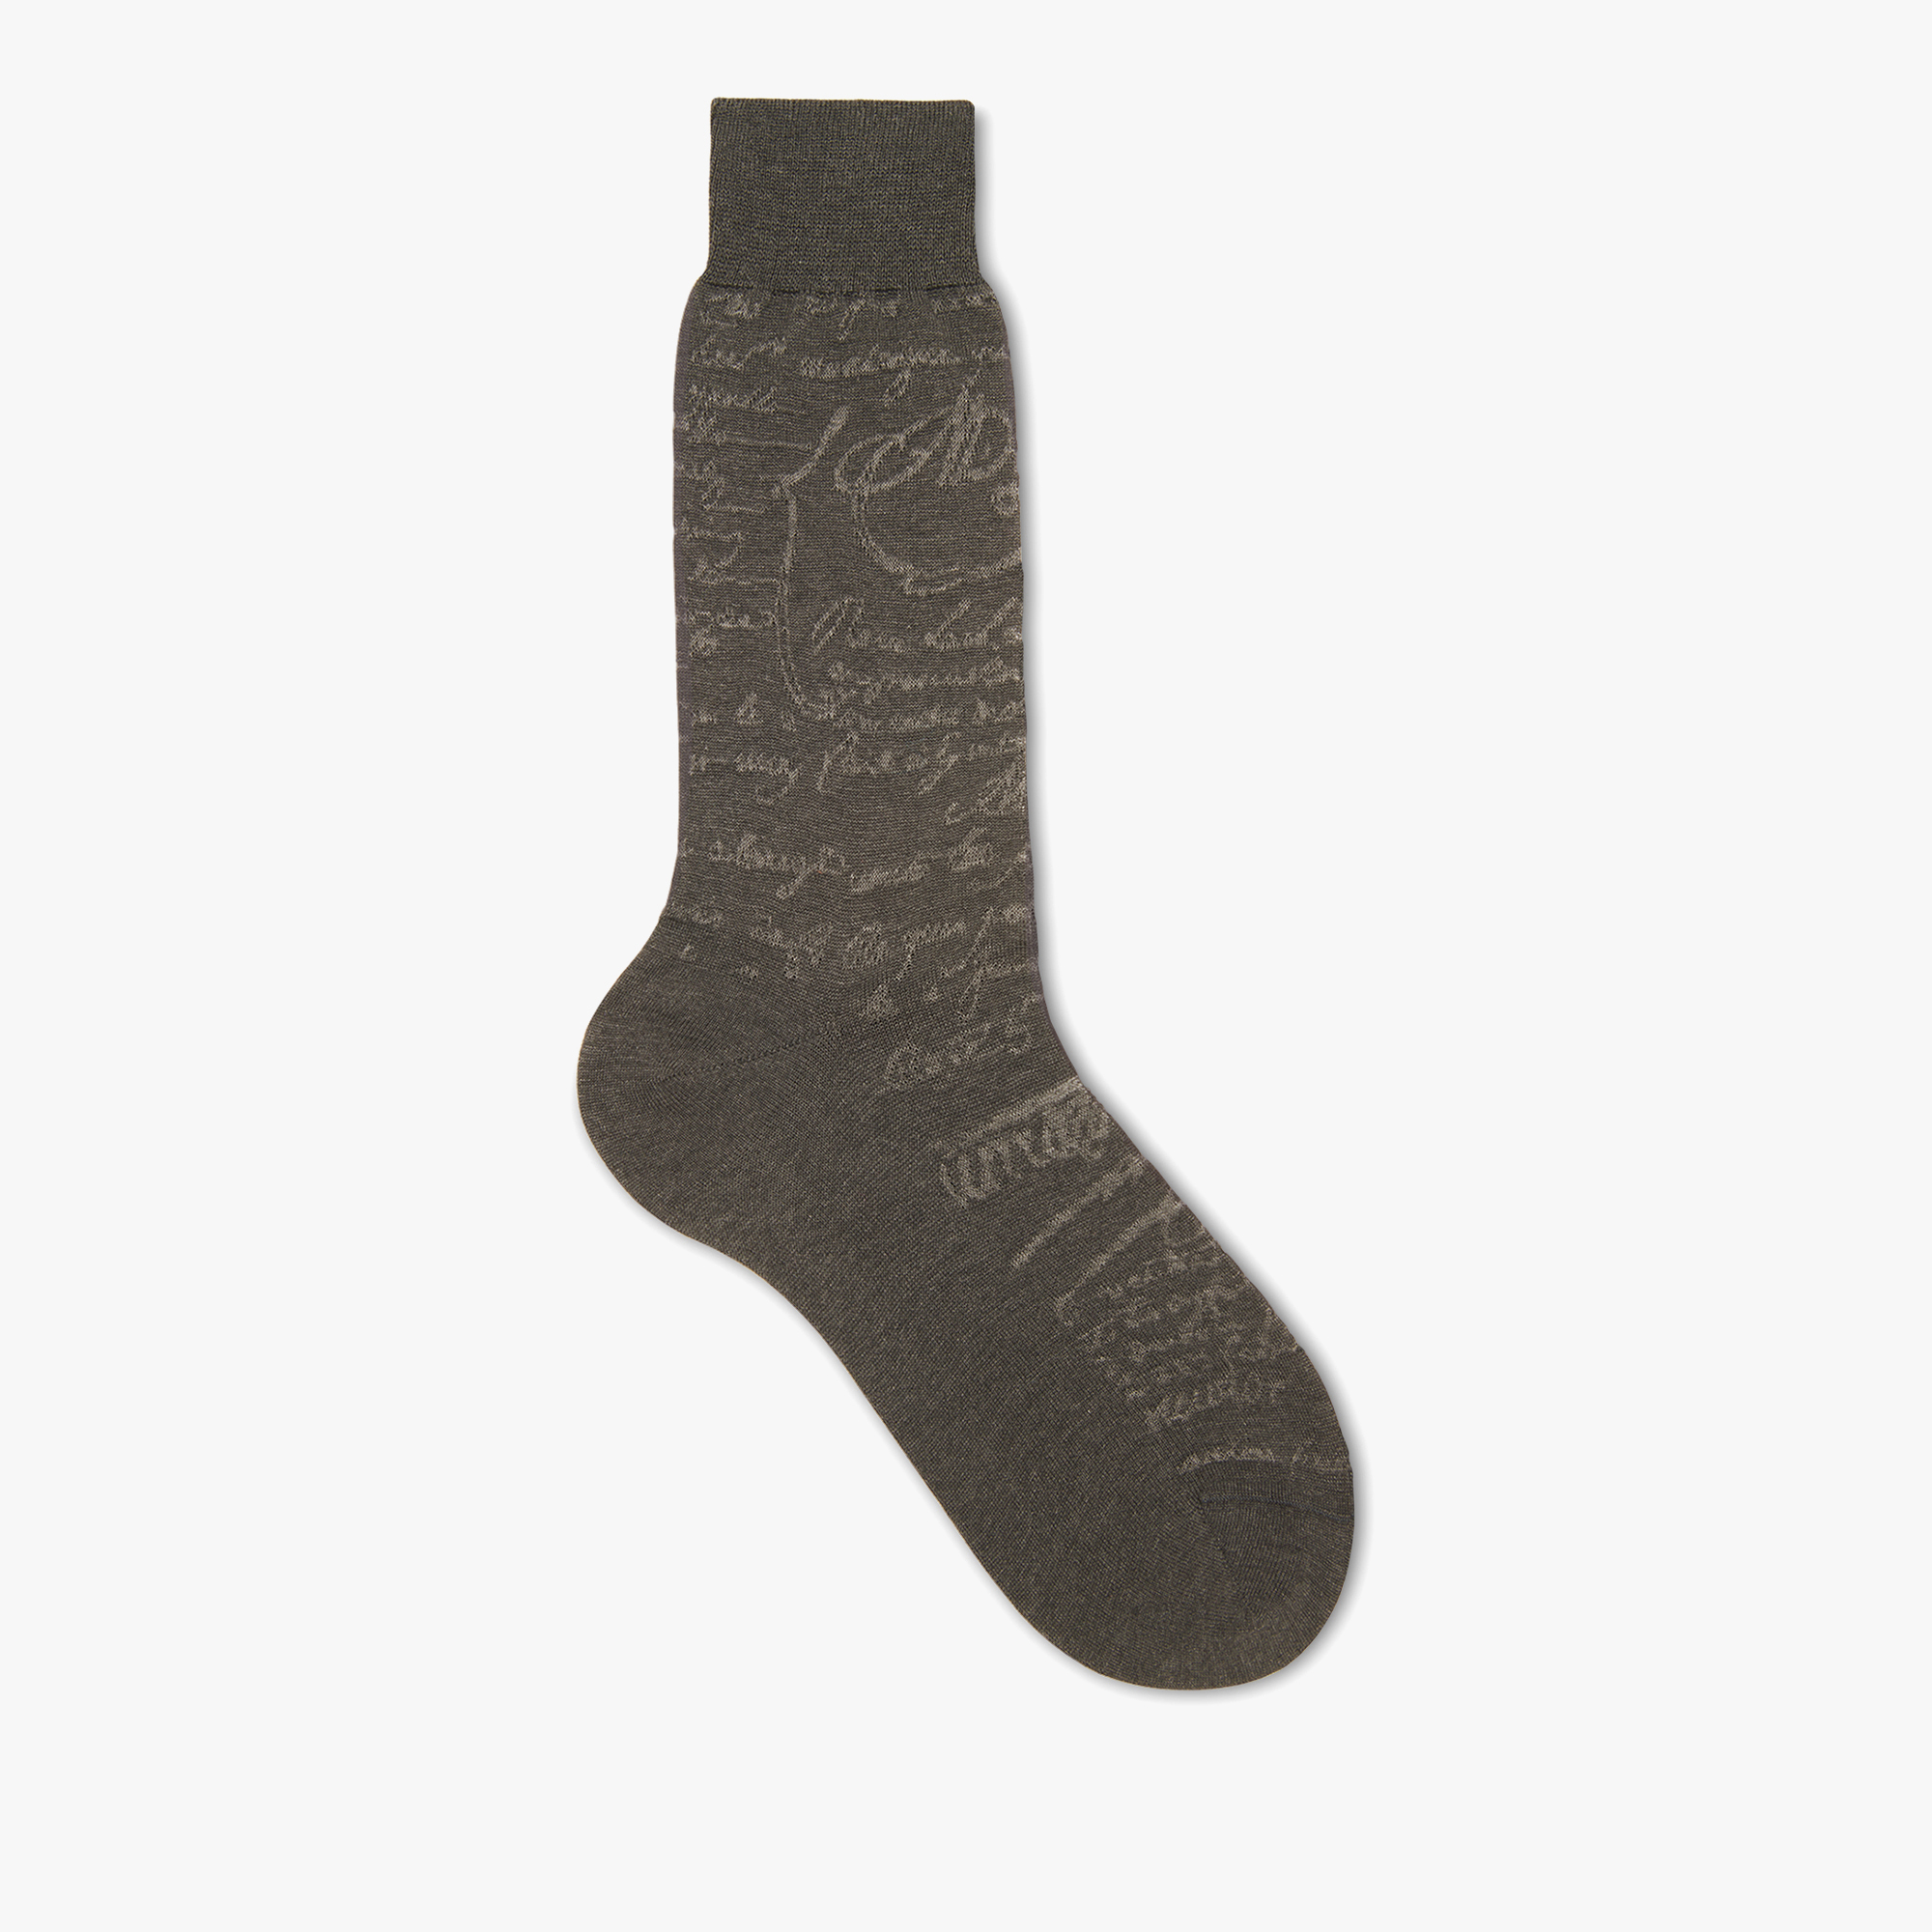 Cotton Scritto Socks, MOULINE CHECK, hi-res